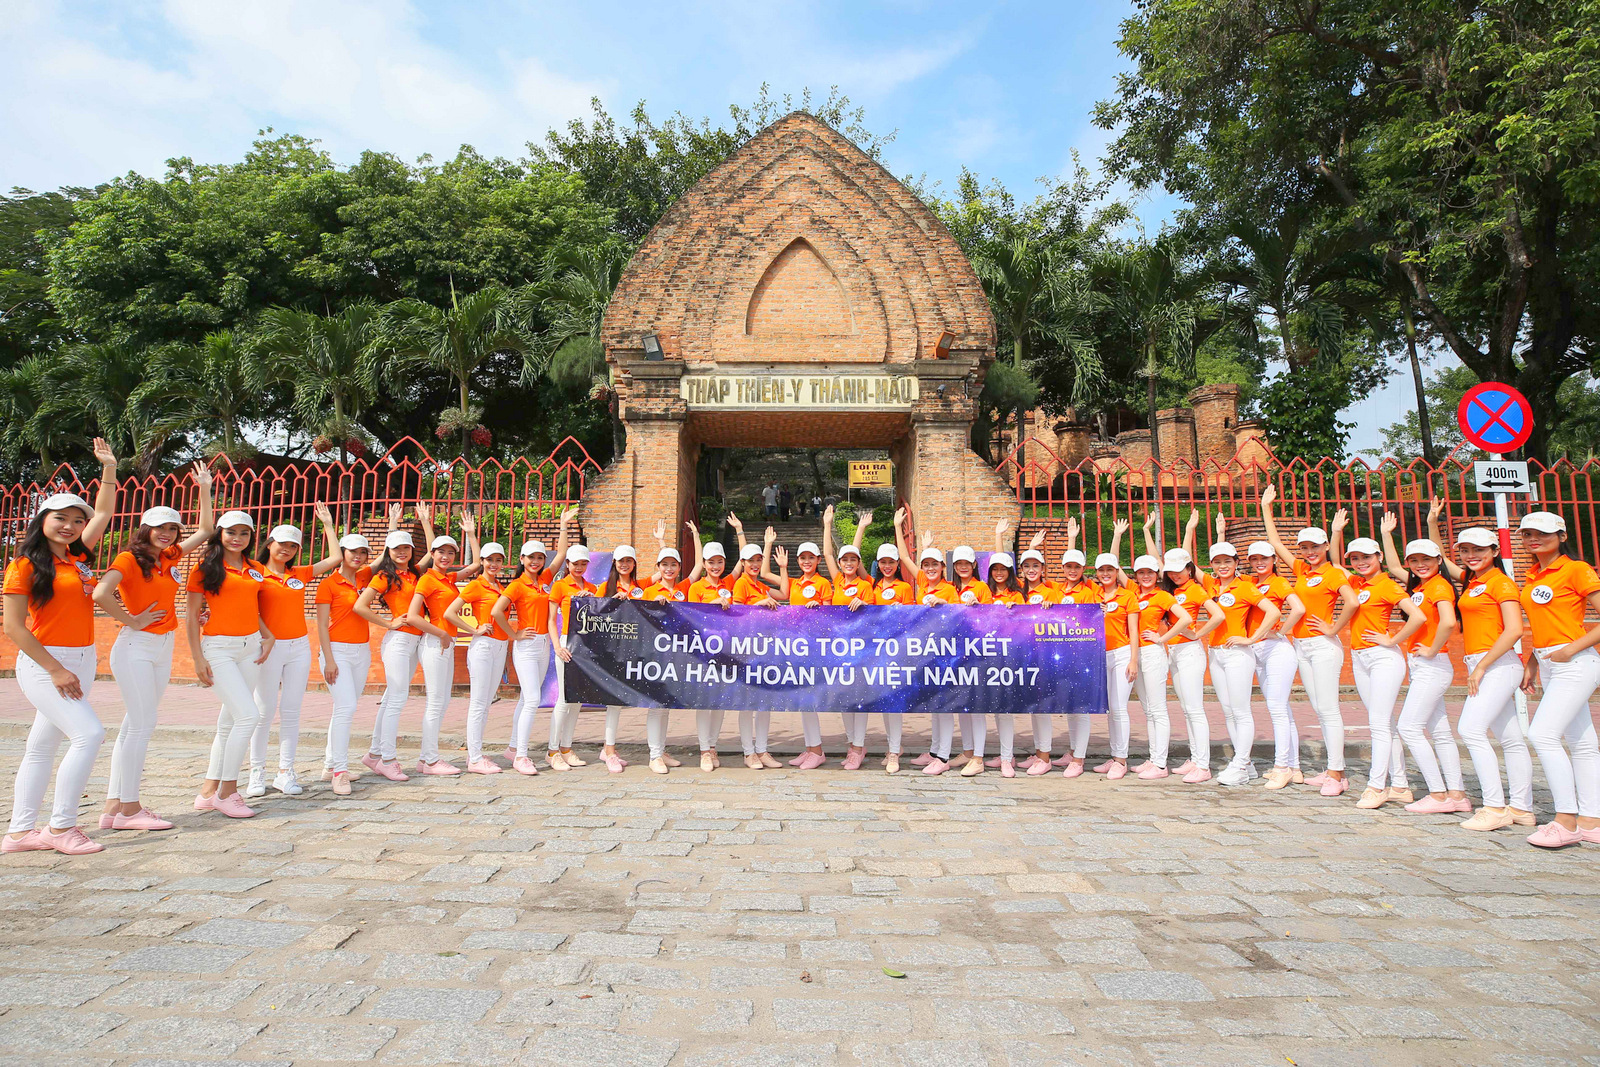 Chụp hình lưu niệm trước cổng khu tích Tháp Bà Ponagar